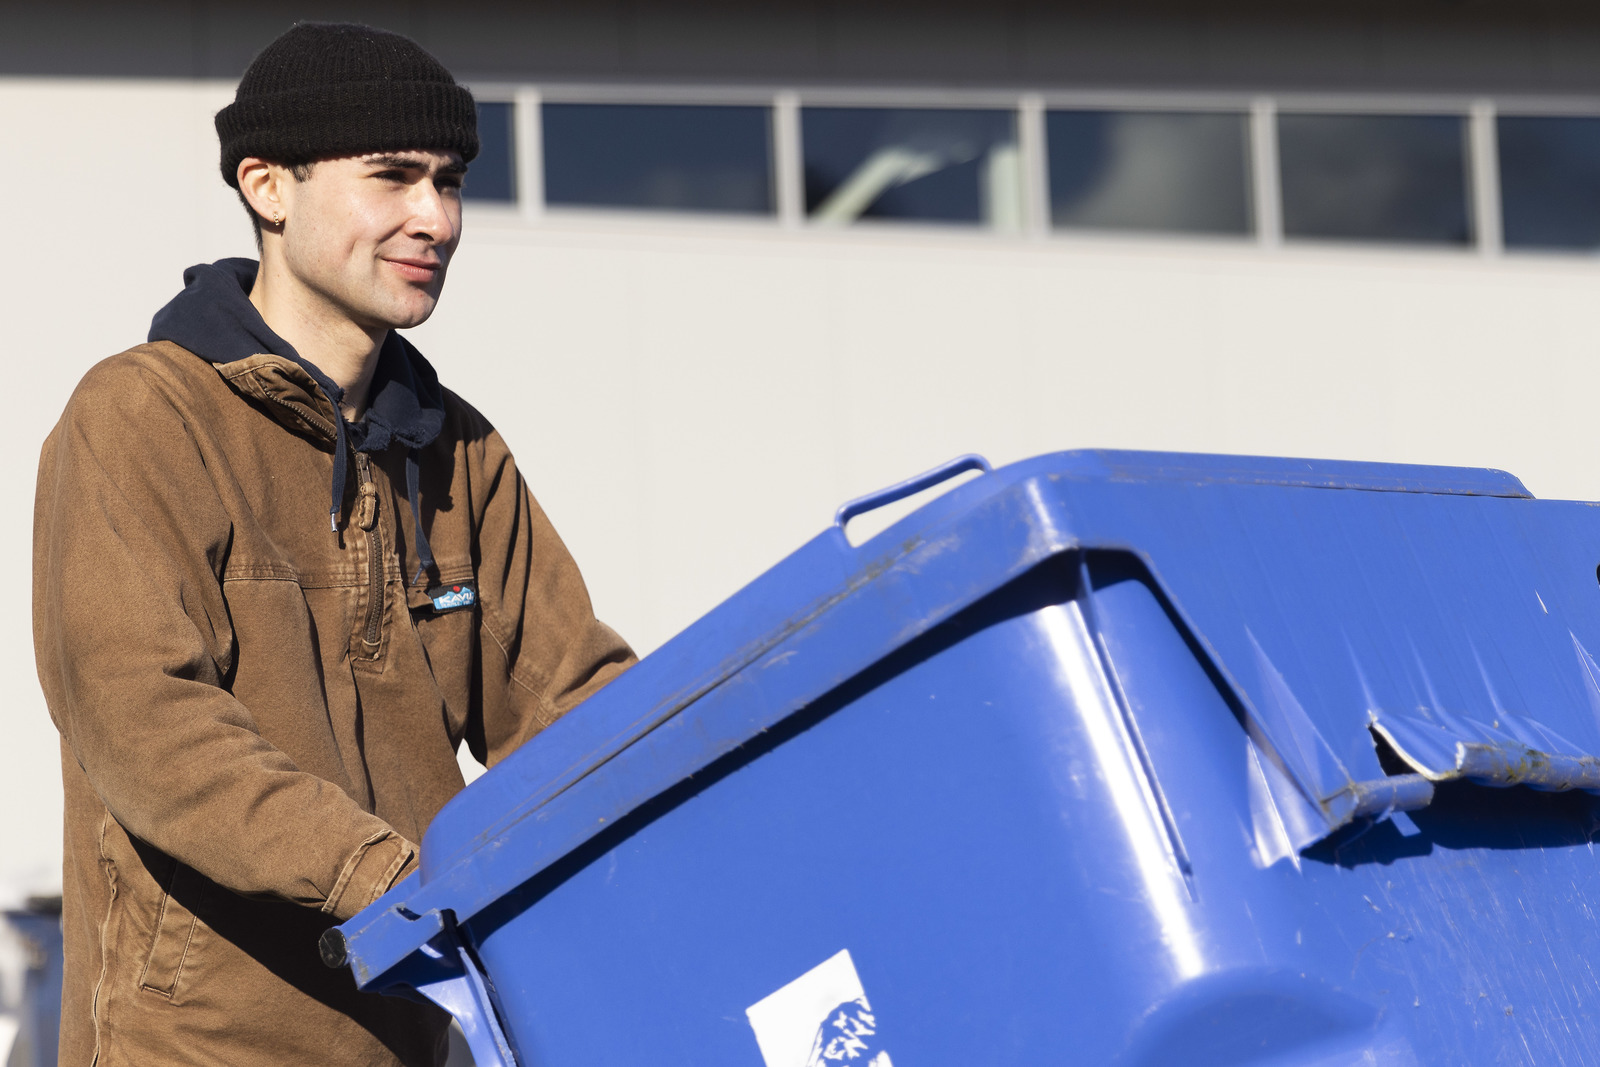 Alden Robert ’23 moves a blue recycling bin